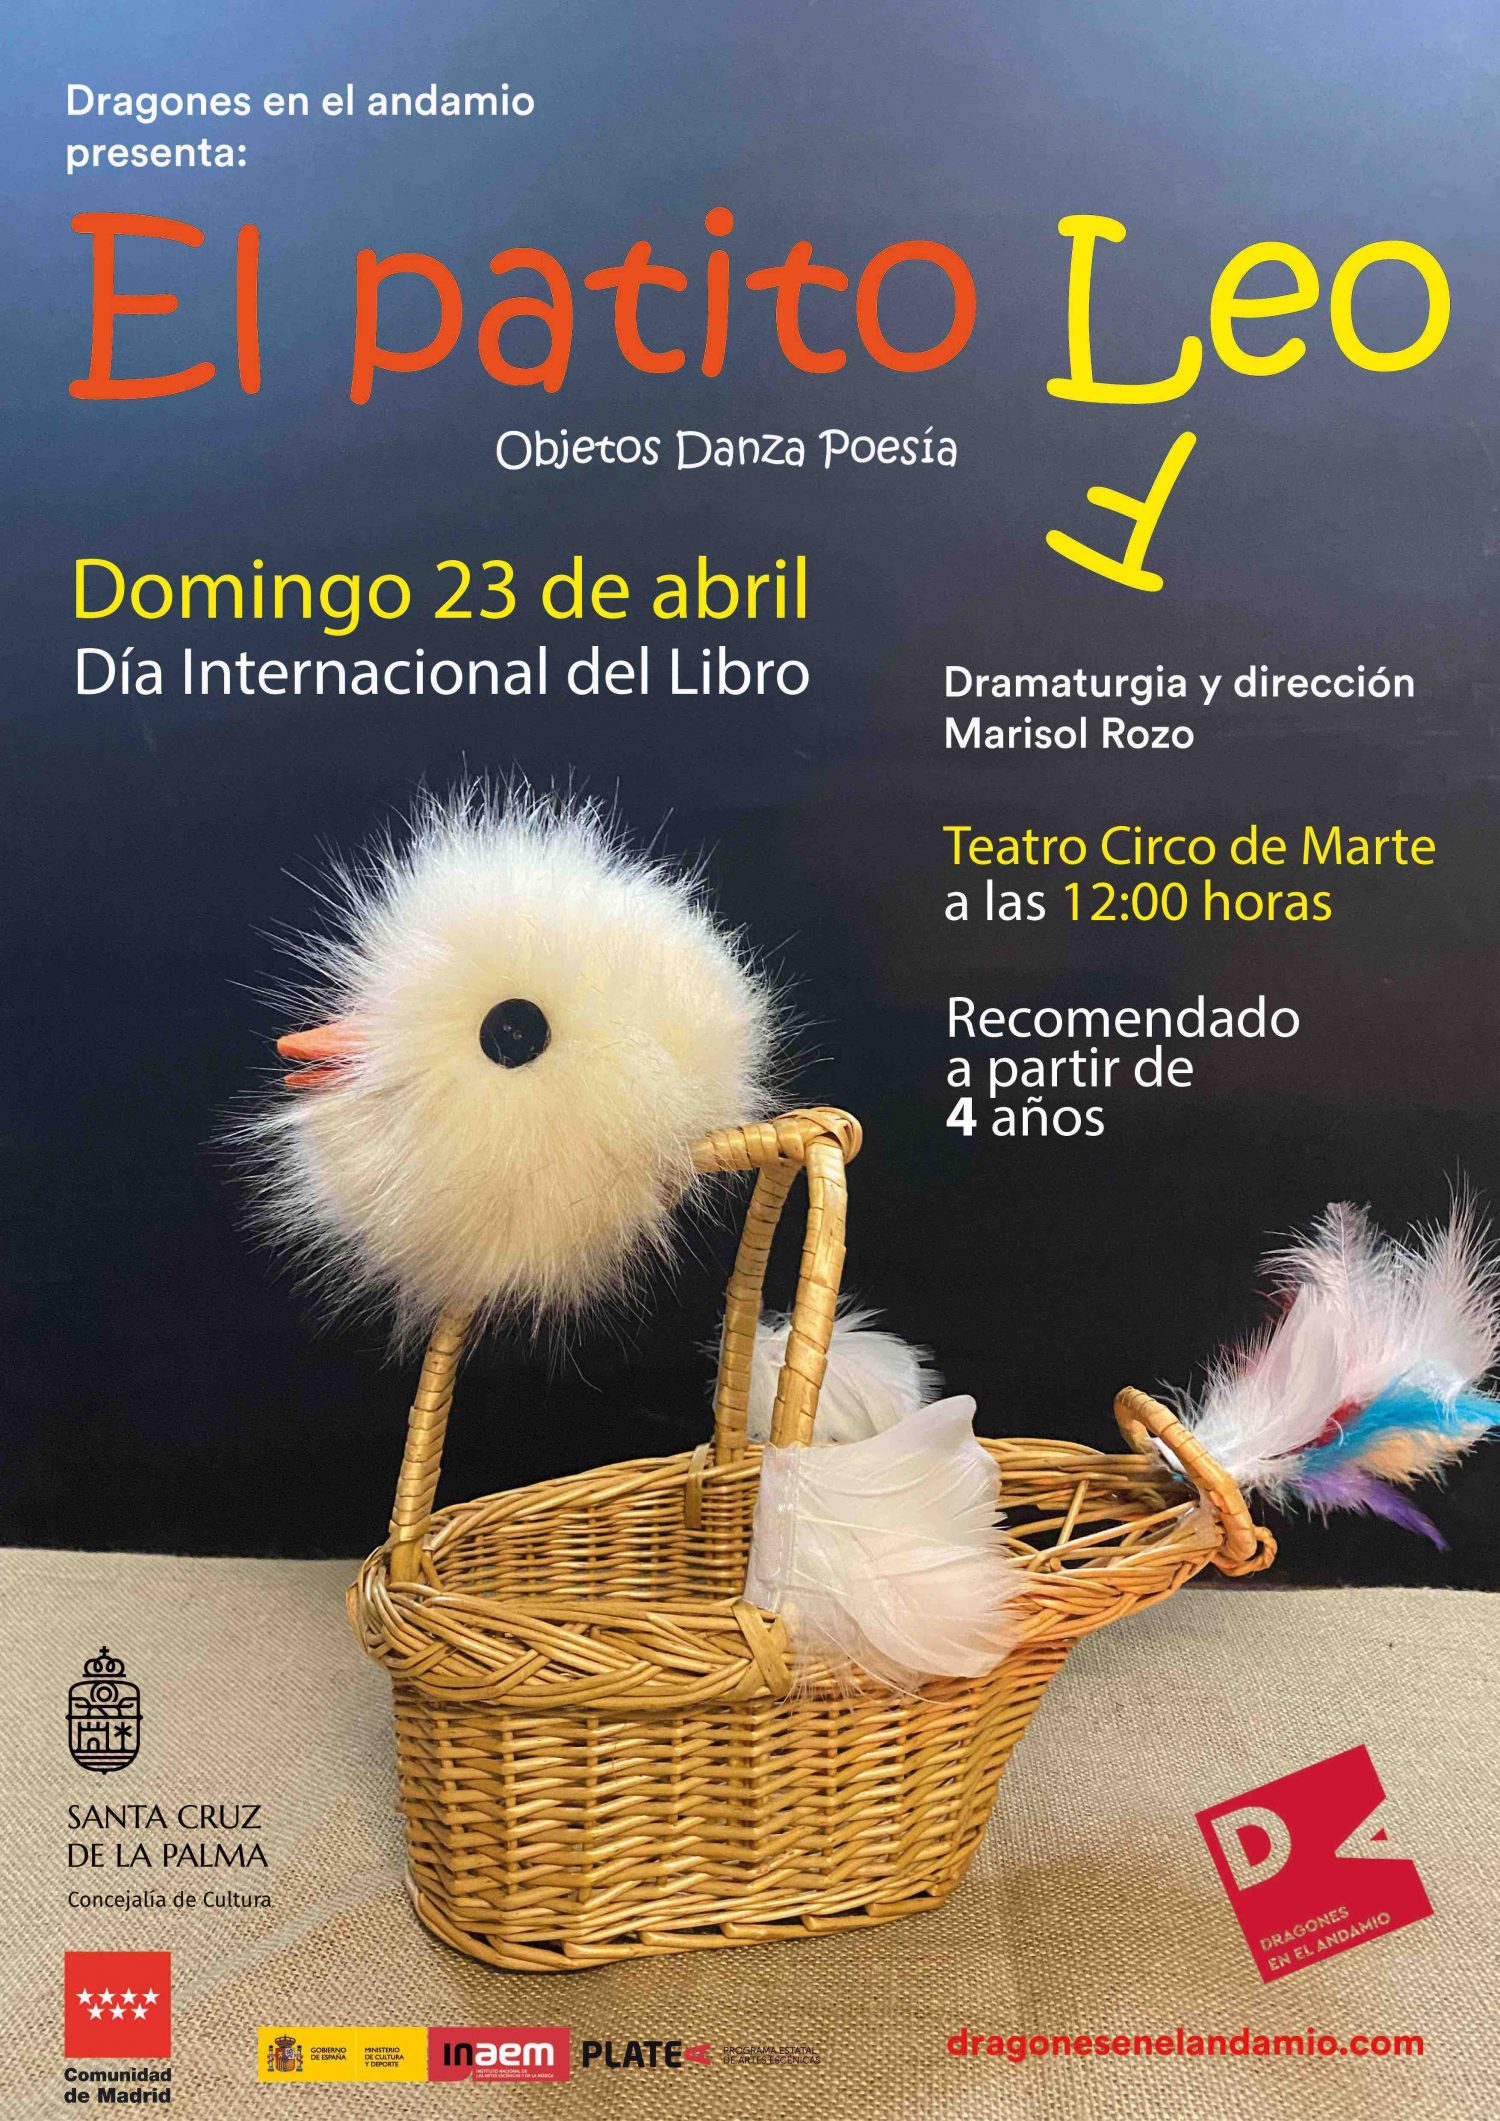 Suelta de libros y espectáculos familiares como colofón este fin de semana en la Feria del Libro de Santa Cruz de La Palma